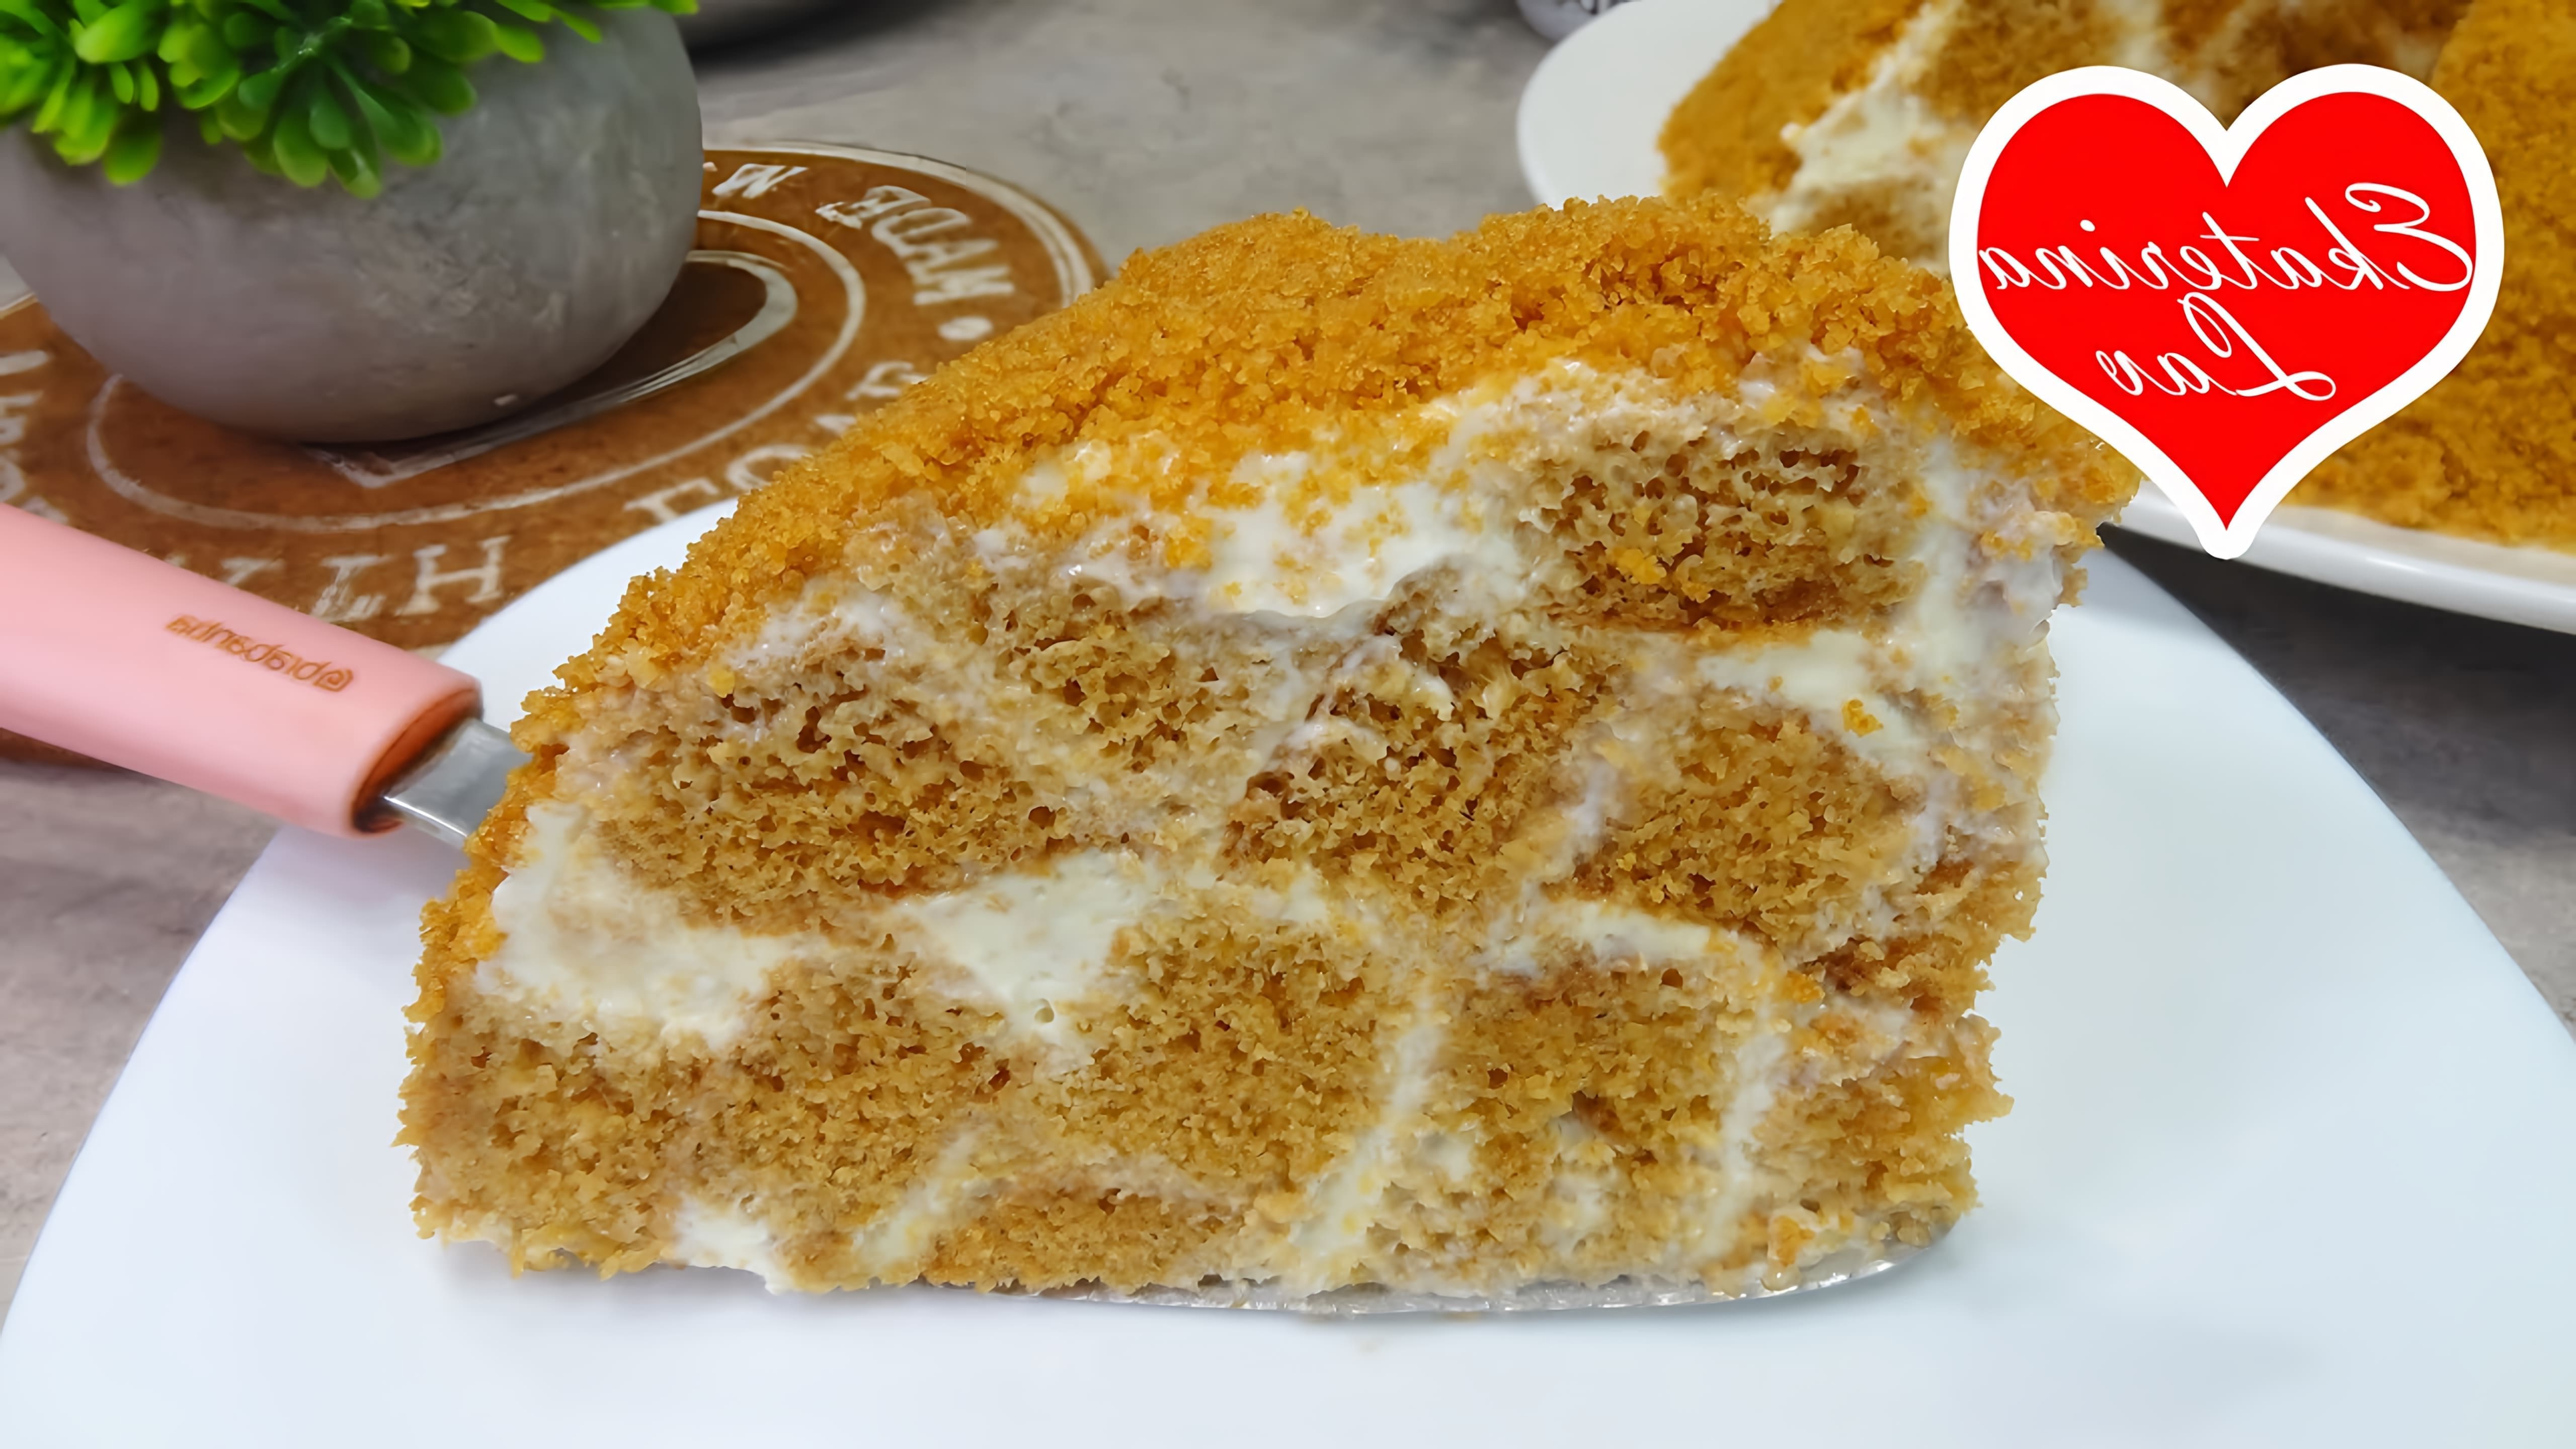 В этом видео демонстрируется рецепт ленивого медового торта в стиле Панчо